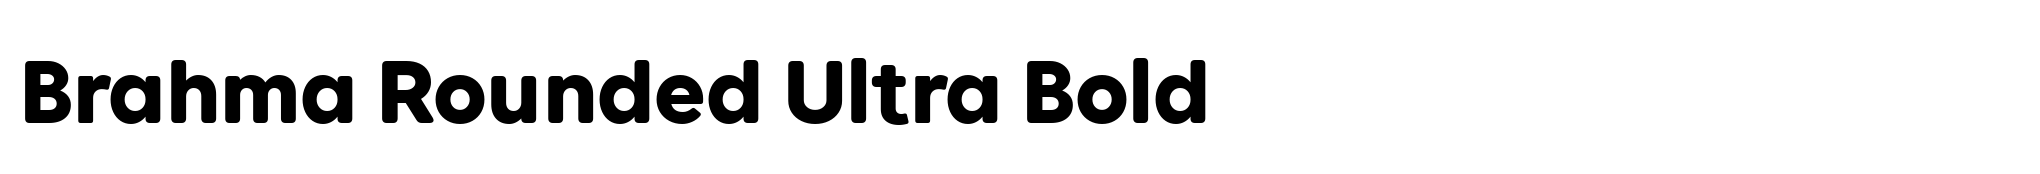 Brahma Rounded Ultra Bold image